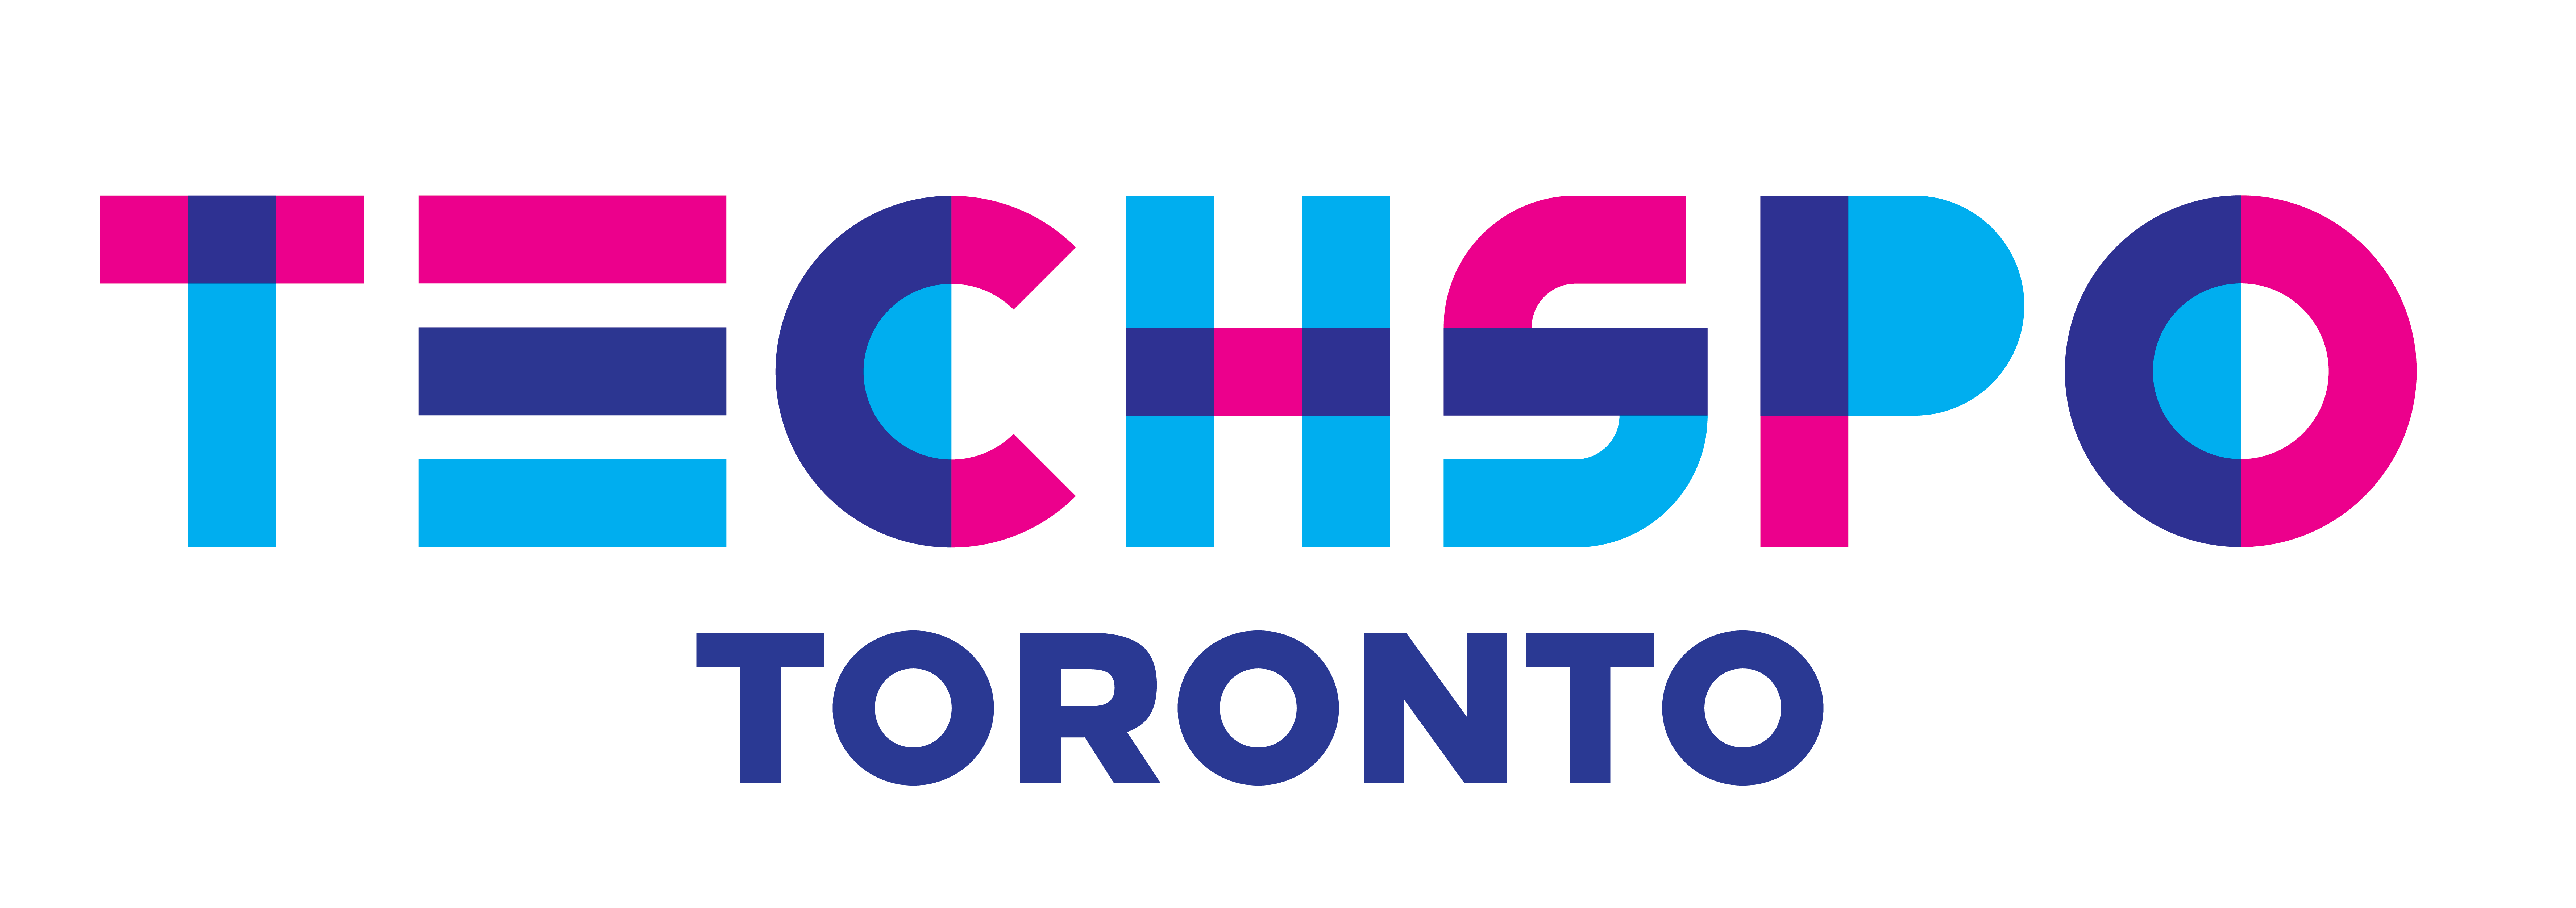 TECHSPO Toronto 2022 Technology Expo (Internet ~ Mobile ~ AdTech ~ MarTech ~ SaaS) Logo